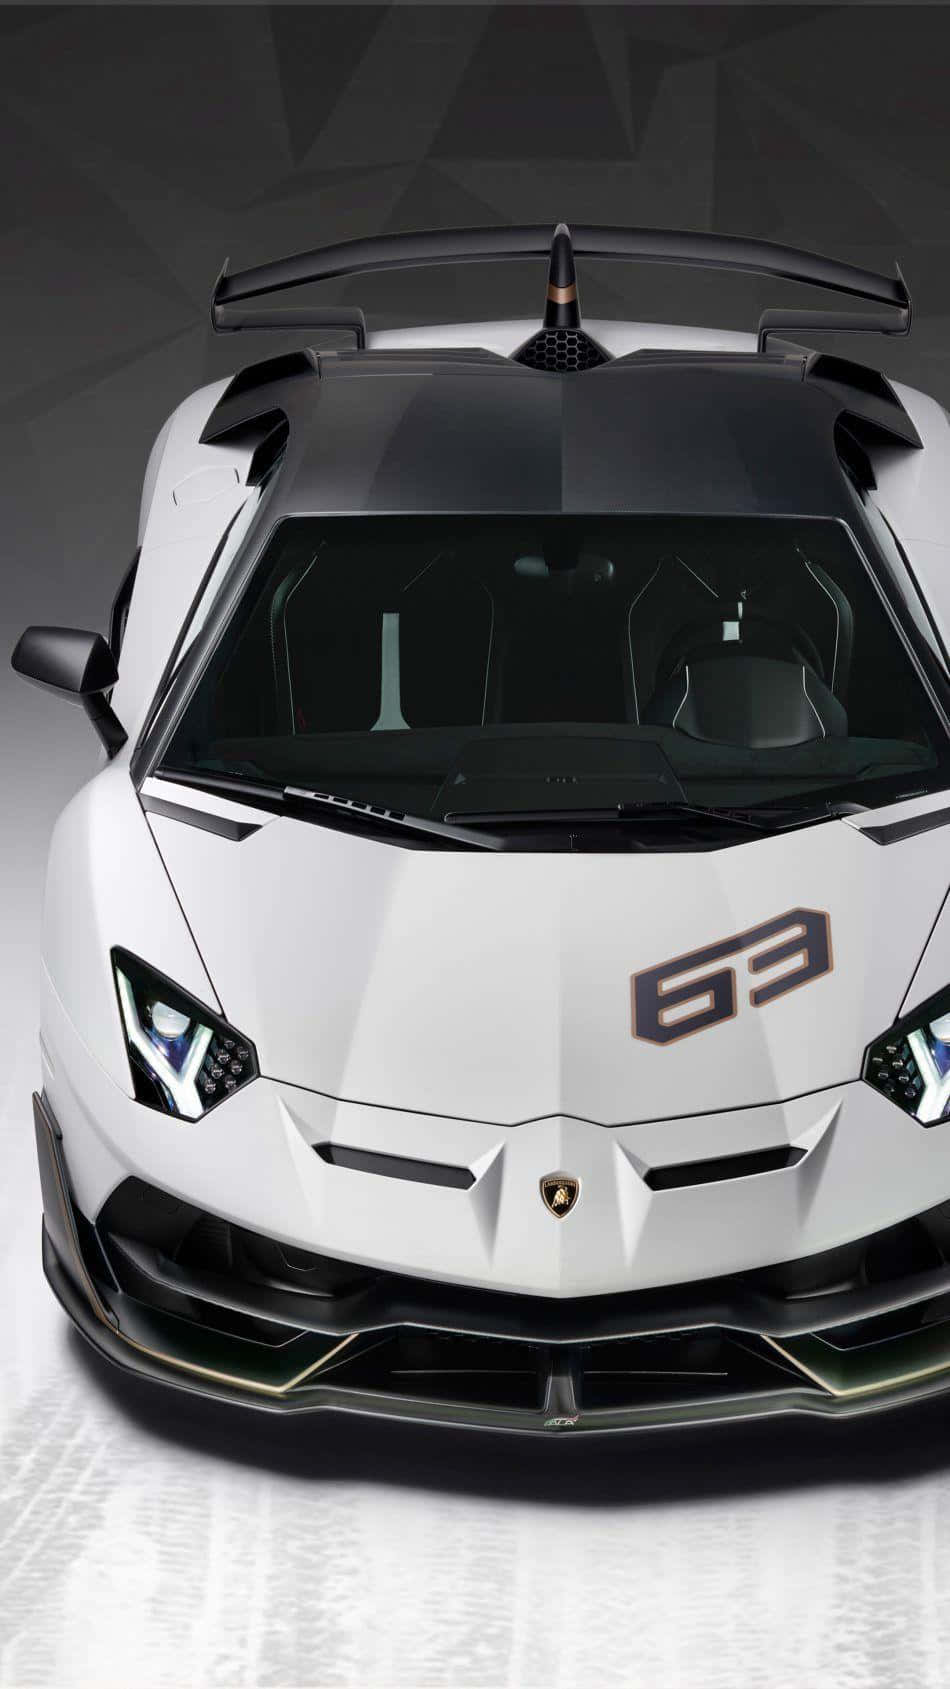 Schwarzesund Weißes Lamborghini-handy Wallpaper